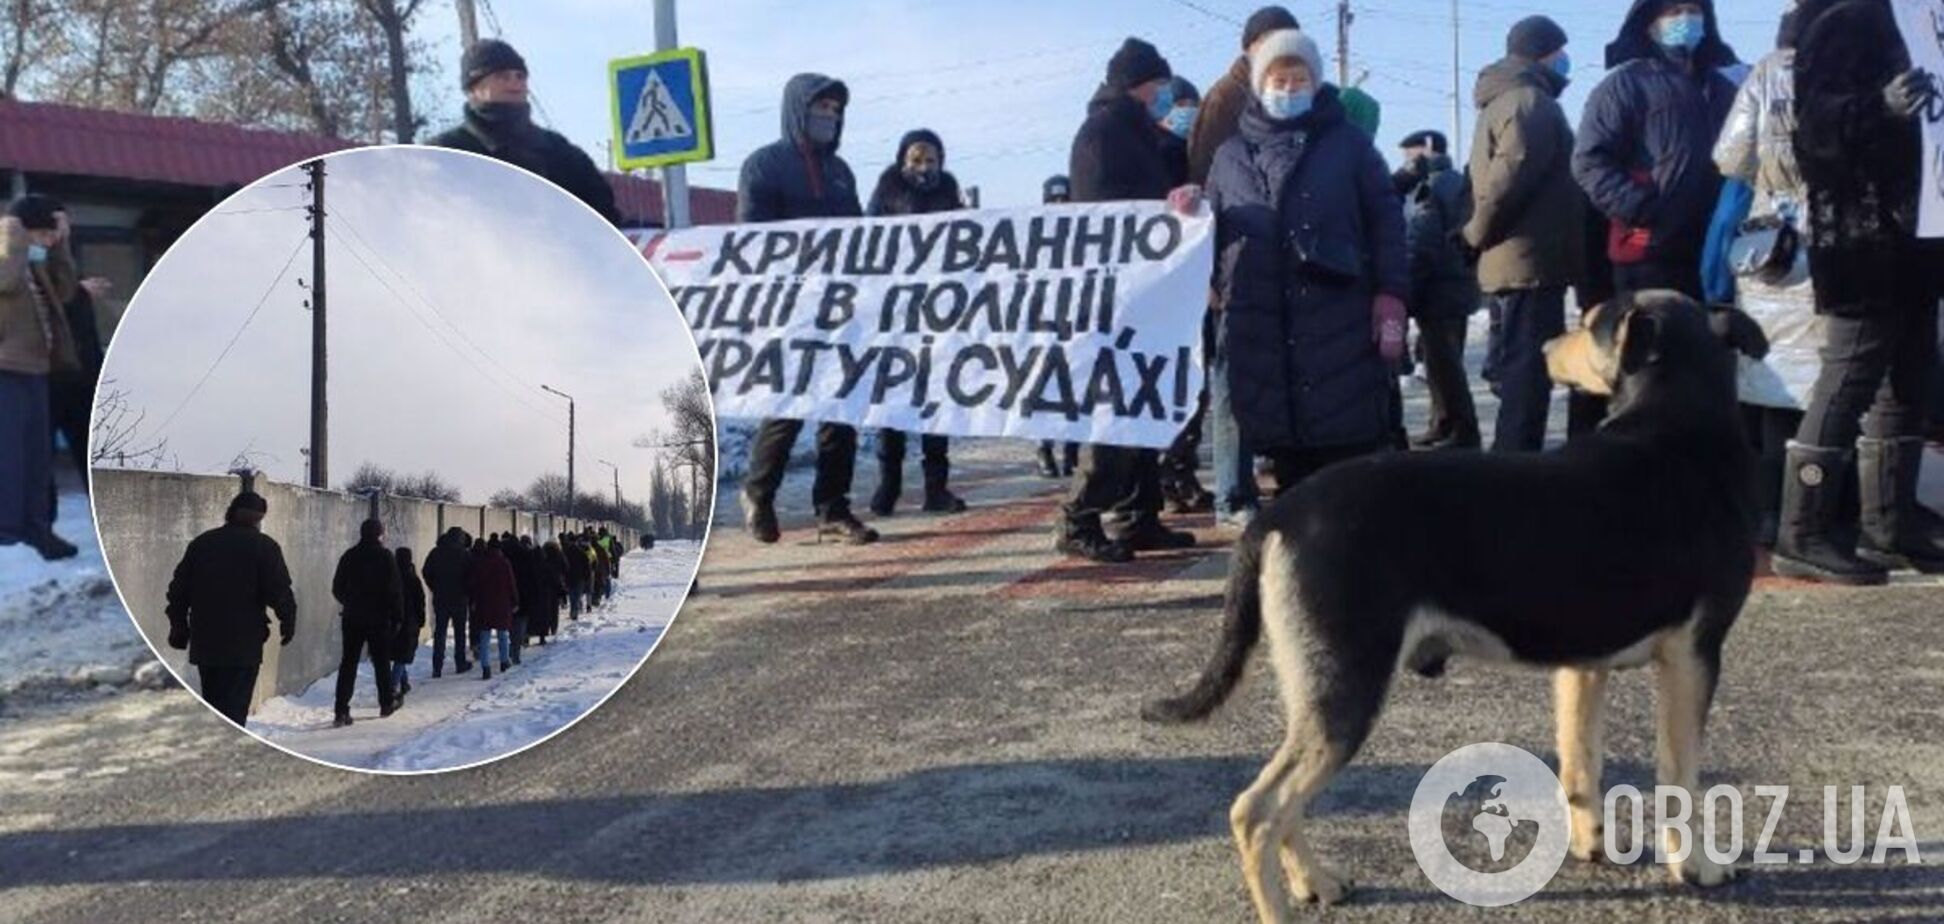 Трасу Київ-Харків знову перекрили протестувальники, трапилися сутички. Відео